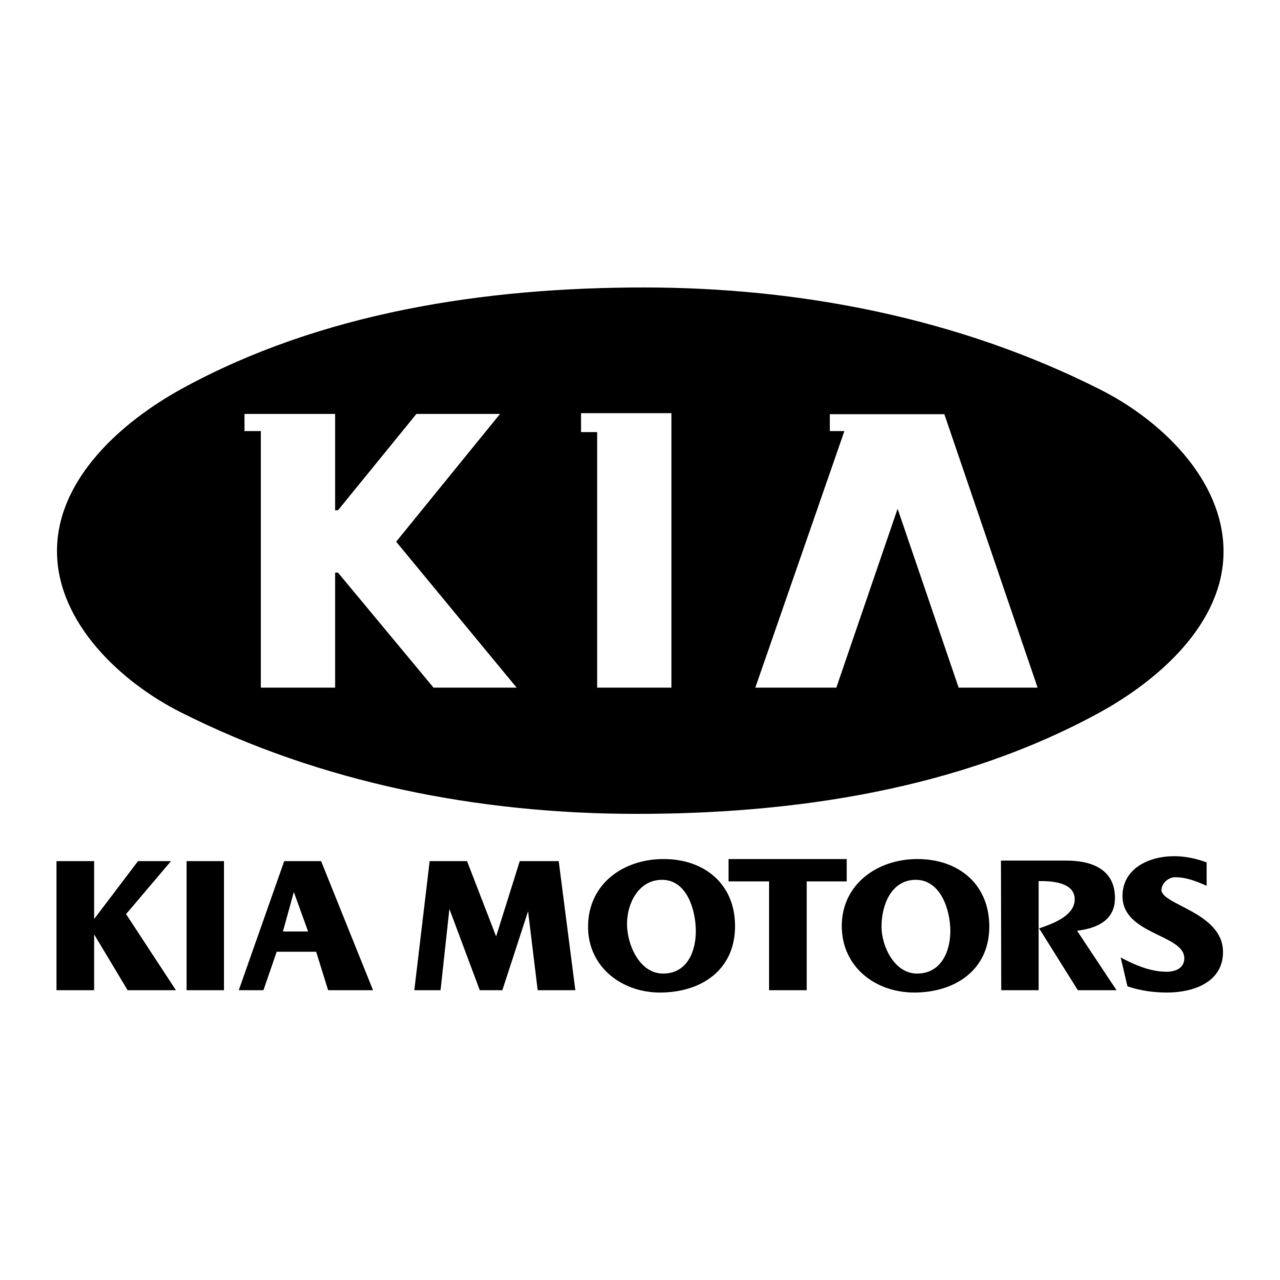 Imagen PNG de logotipo de Kia